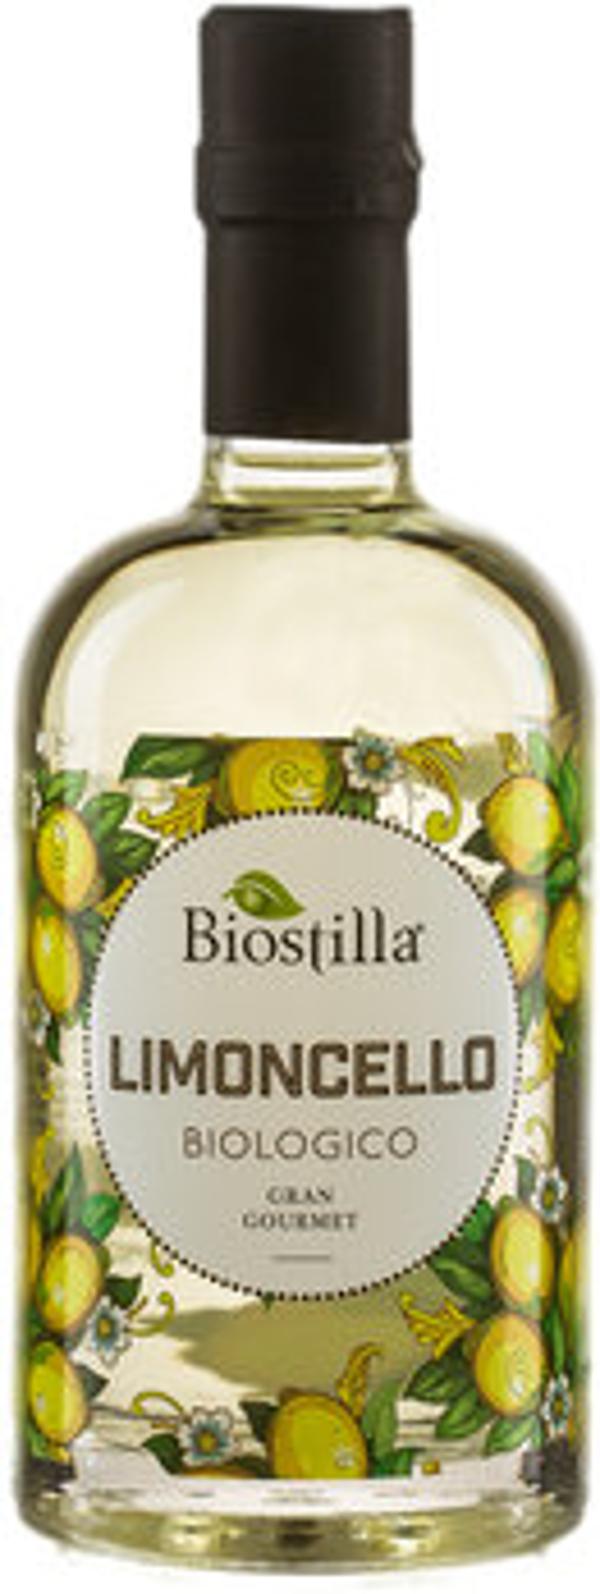 Produktfoto zu Limoncello Biostilla Walcher 0,5l